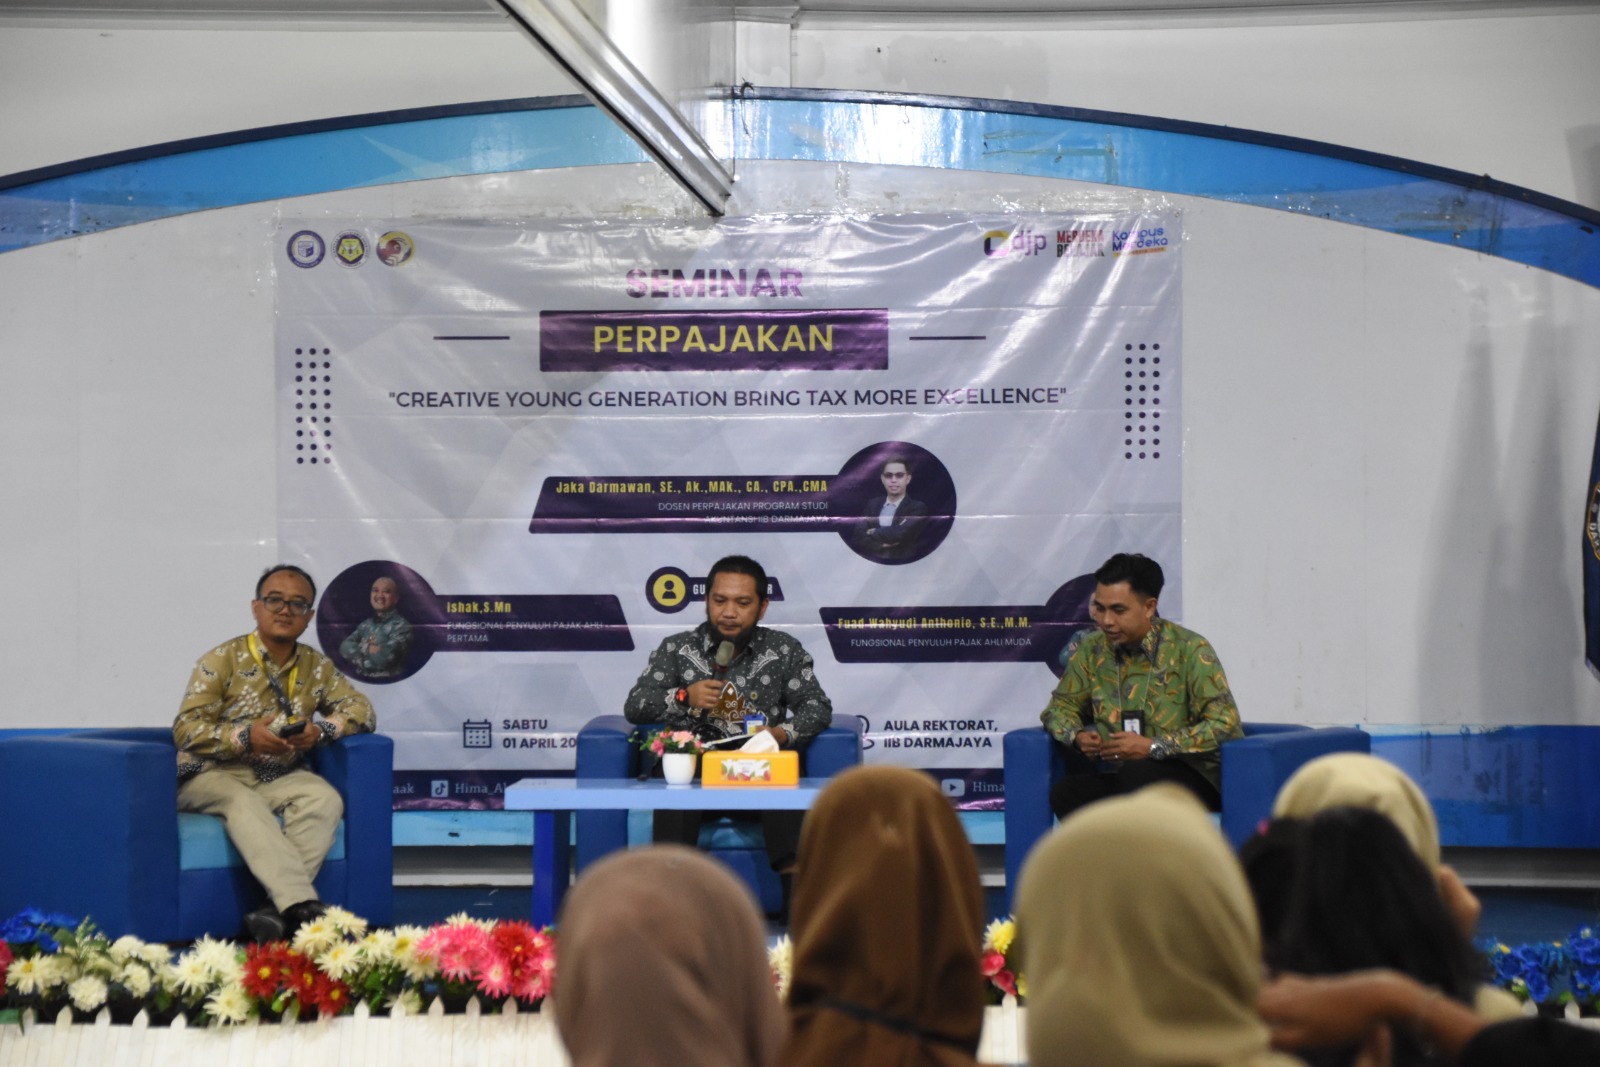 Hima Akuntansi IIB Darmajaya Gelar Seminar Perpajakan Hadirkan Narasumber DJP Bengkulu Lampung